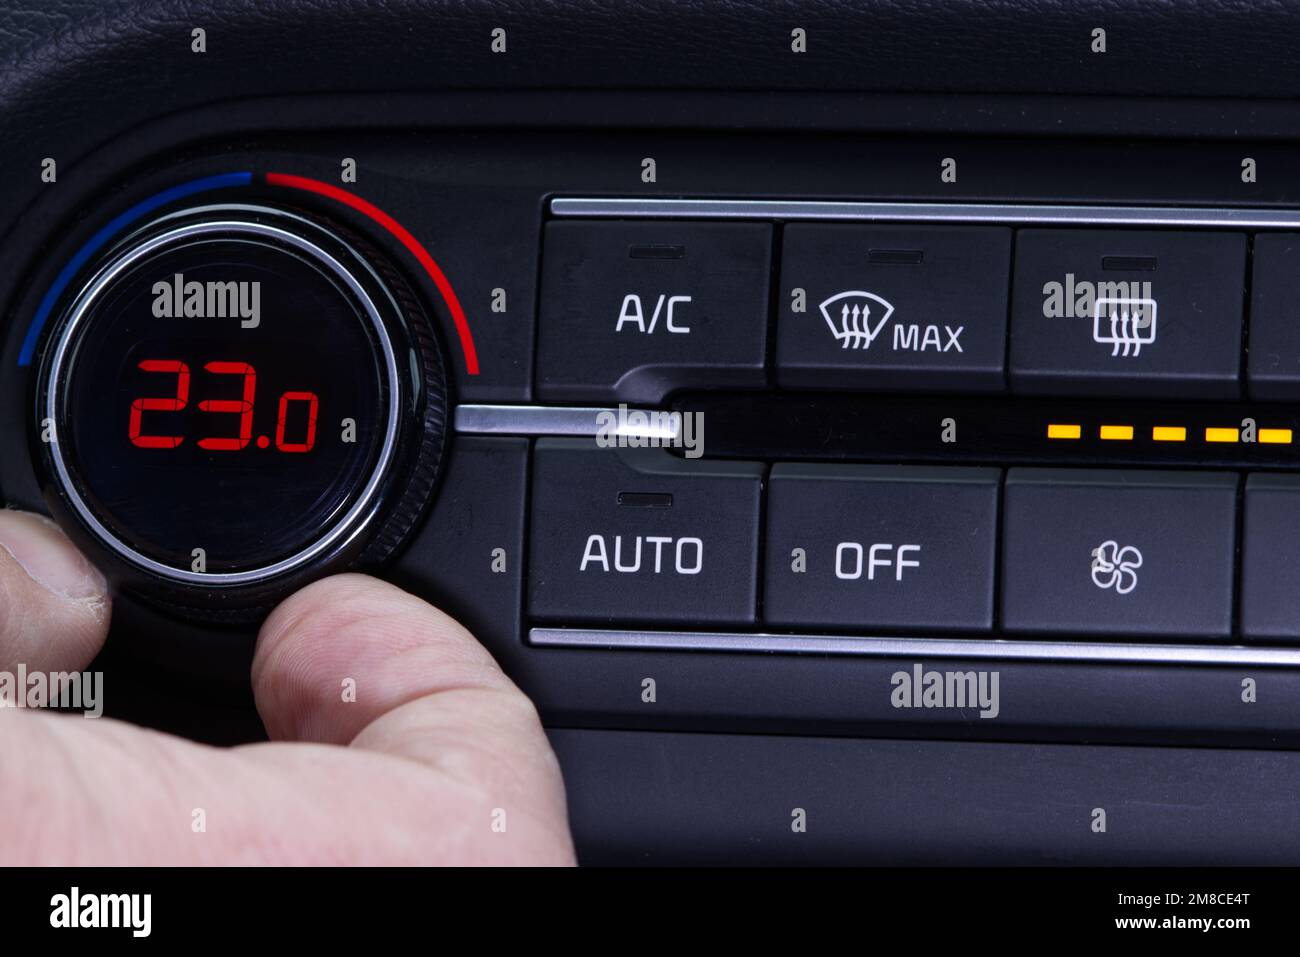 Configurez le climatiseur dans la voiture. La main fait tourner la bague du  climatiseur. L'affichage indique une température de 23,0 degrés celsius à  l'intérieur de la voiture. Air de refroidissement en t